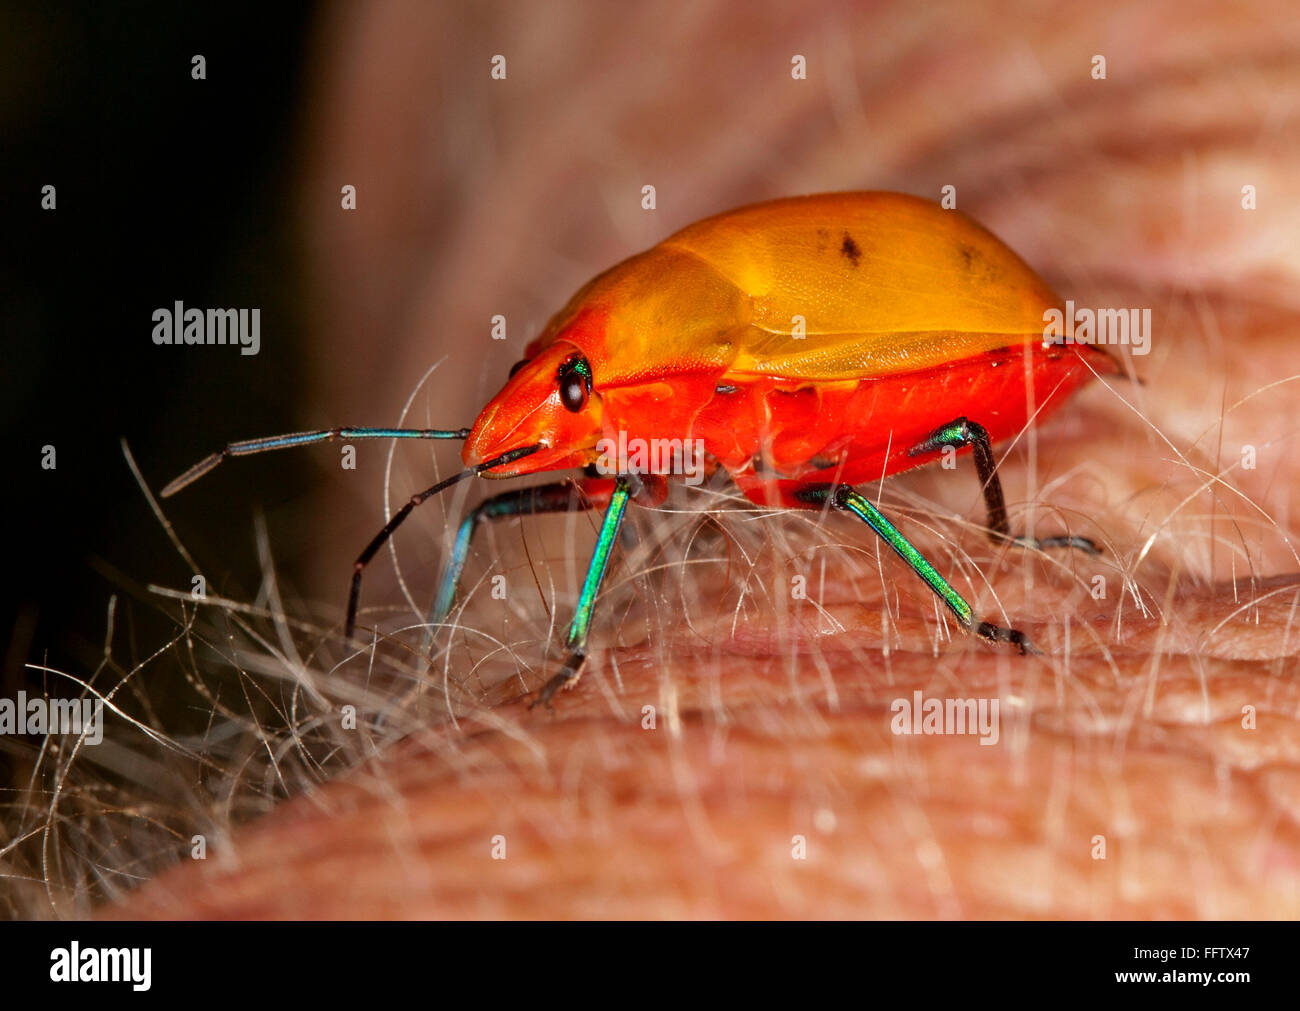 Spettacolare vivido arancione e rosso di insetto, Australian arlecchino / gioiello bug, Tectocoris diophthalmus tra i capelli sul braccio del giardiniere Foto Stock